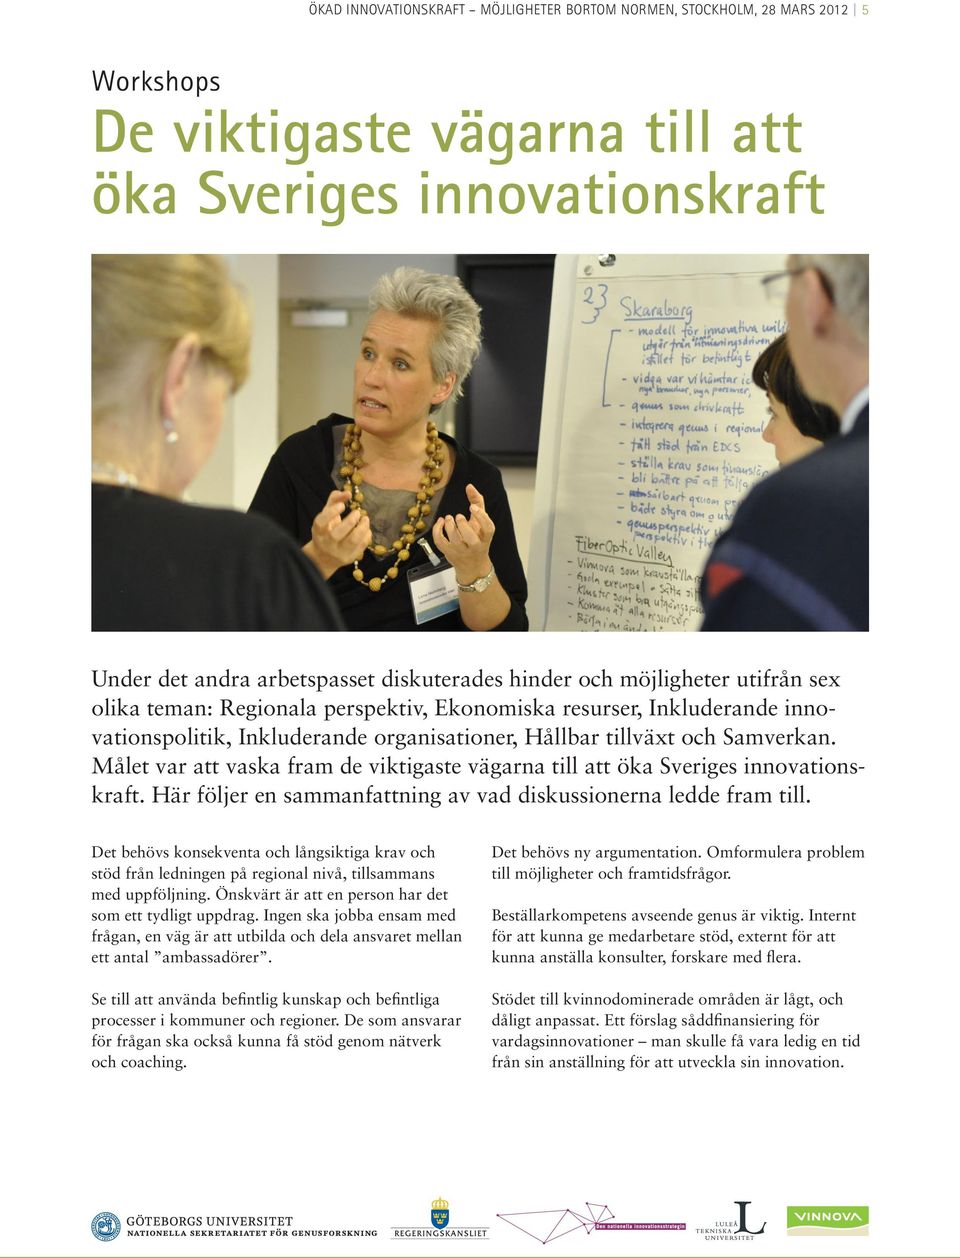 Målet var att vaska fram de viktigaste vägarna till att öka Sveriges innovationskraft. Här följer en sammanfattning av vad diskussionerna ledde fram till.